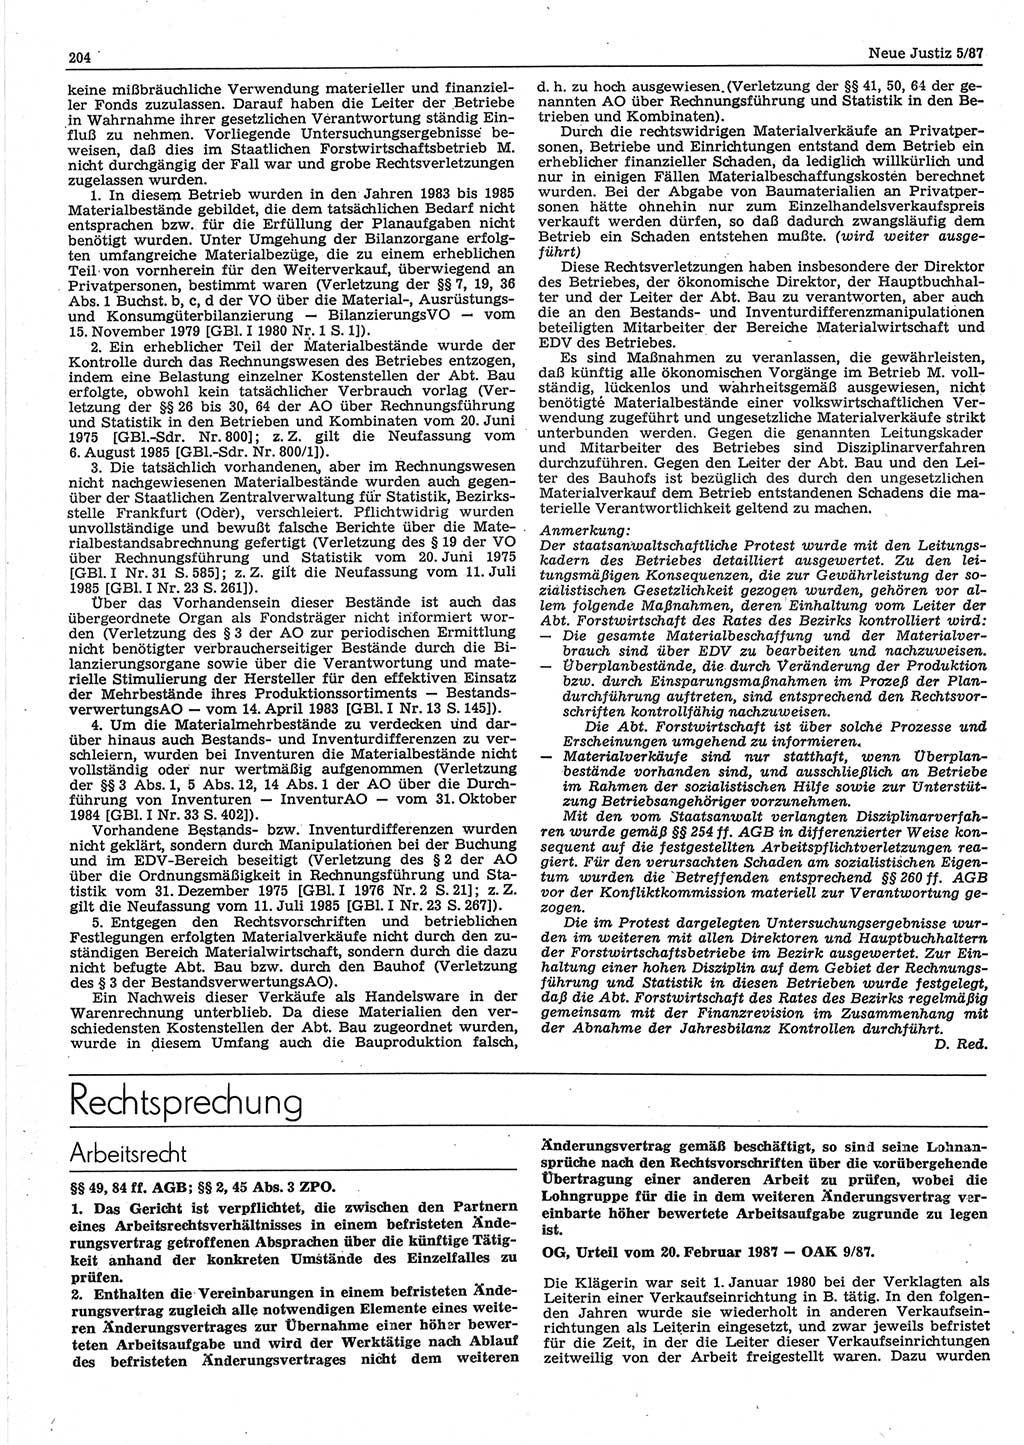 Neue Justiz (NJ), Zeitschrift für sozialistisches Recht und Gesetzlichkeit [Deutsche Demokratische Republik (DDR)], 41. Jahrgang 1987, Seite 204 (NJ DDR 1987, S. 204)